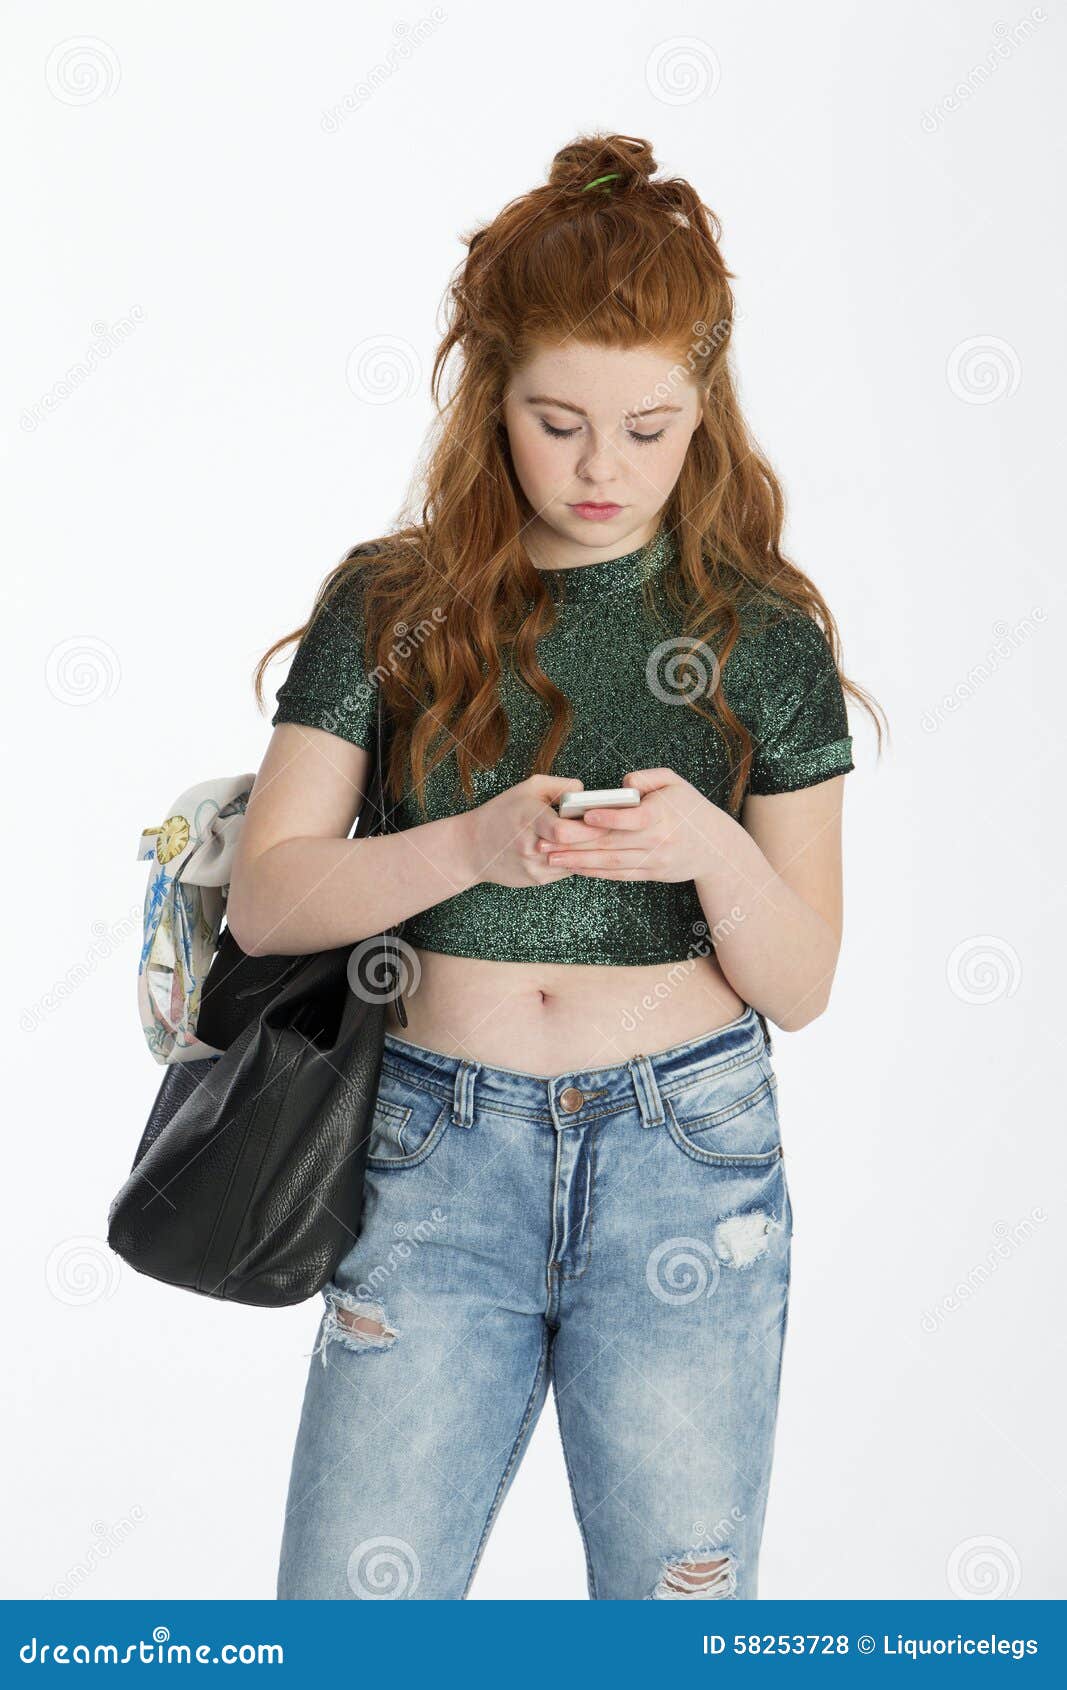 teenager engrossed in her smartphone